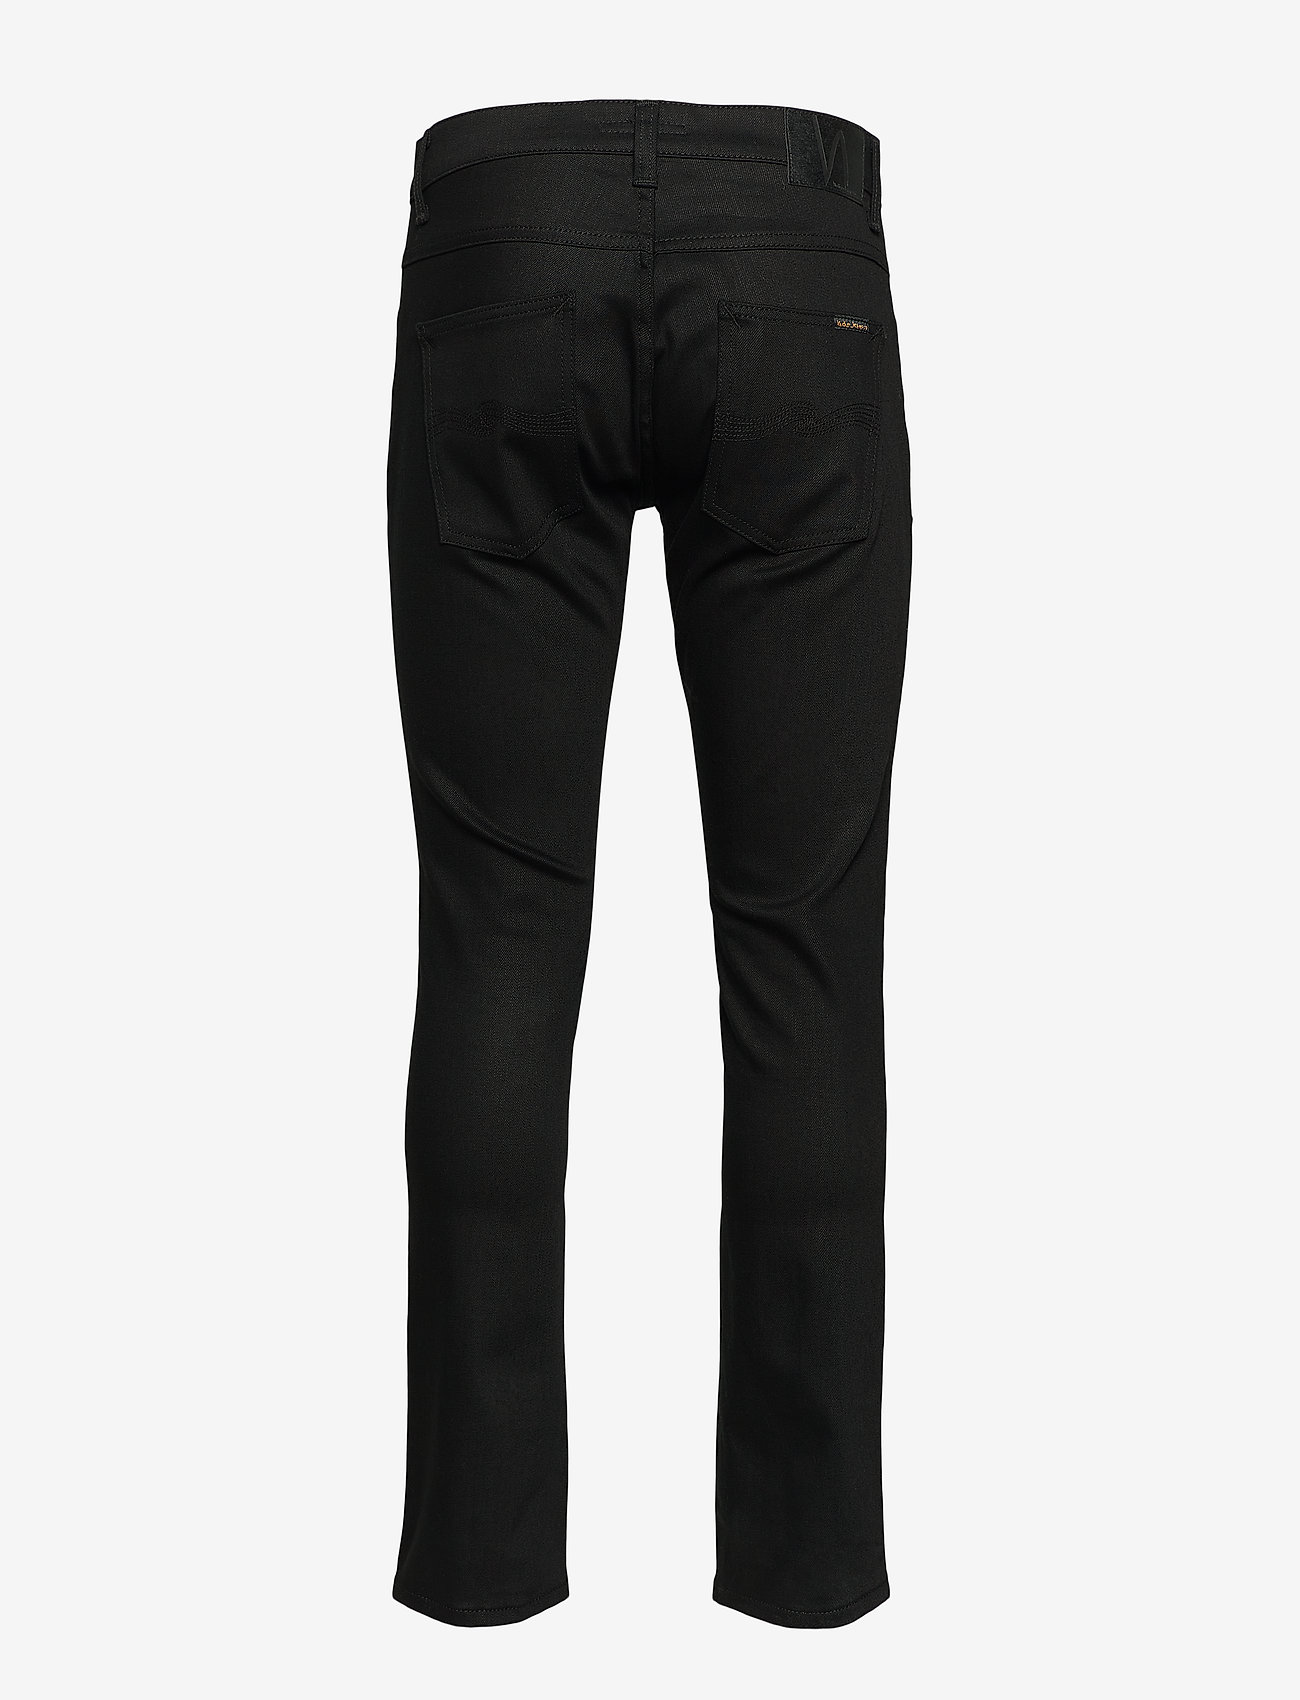 Nudie Jeans - Grim Tim - slim jeans - dry ever black - 2